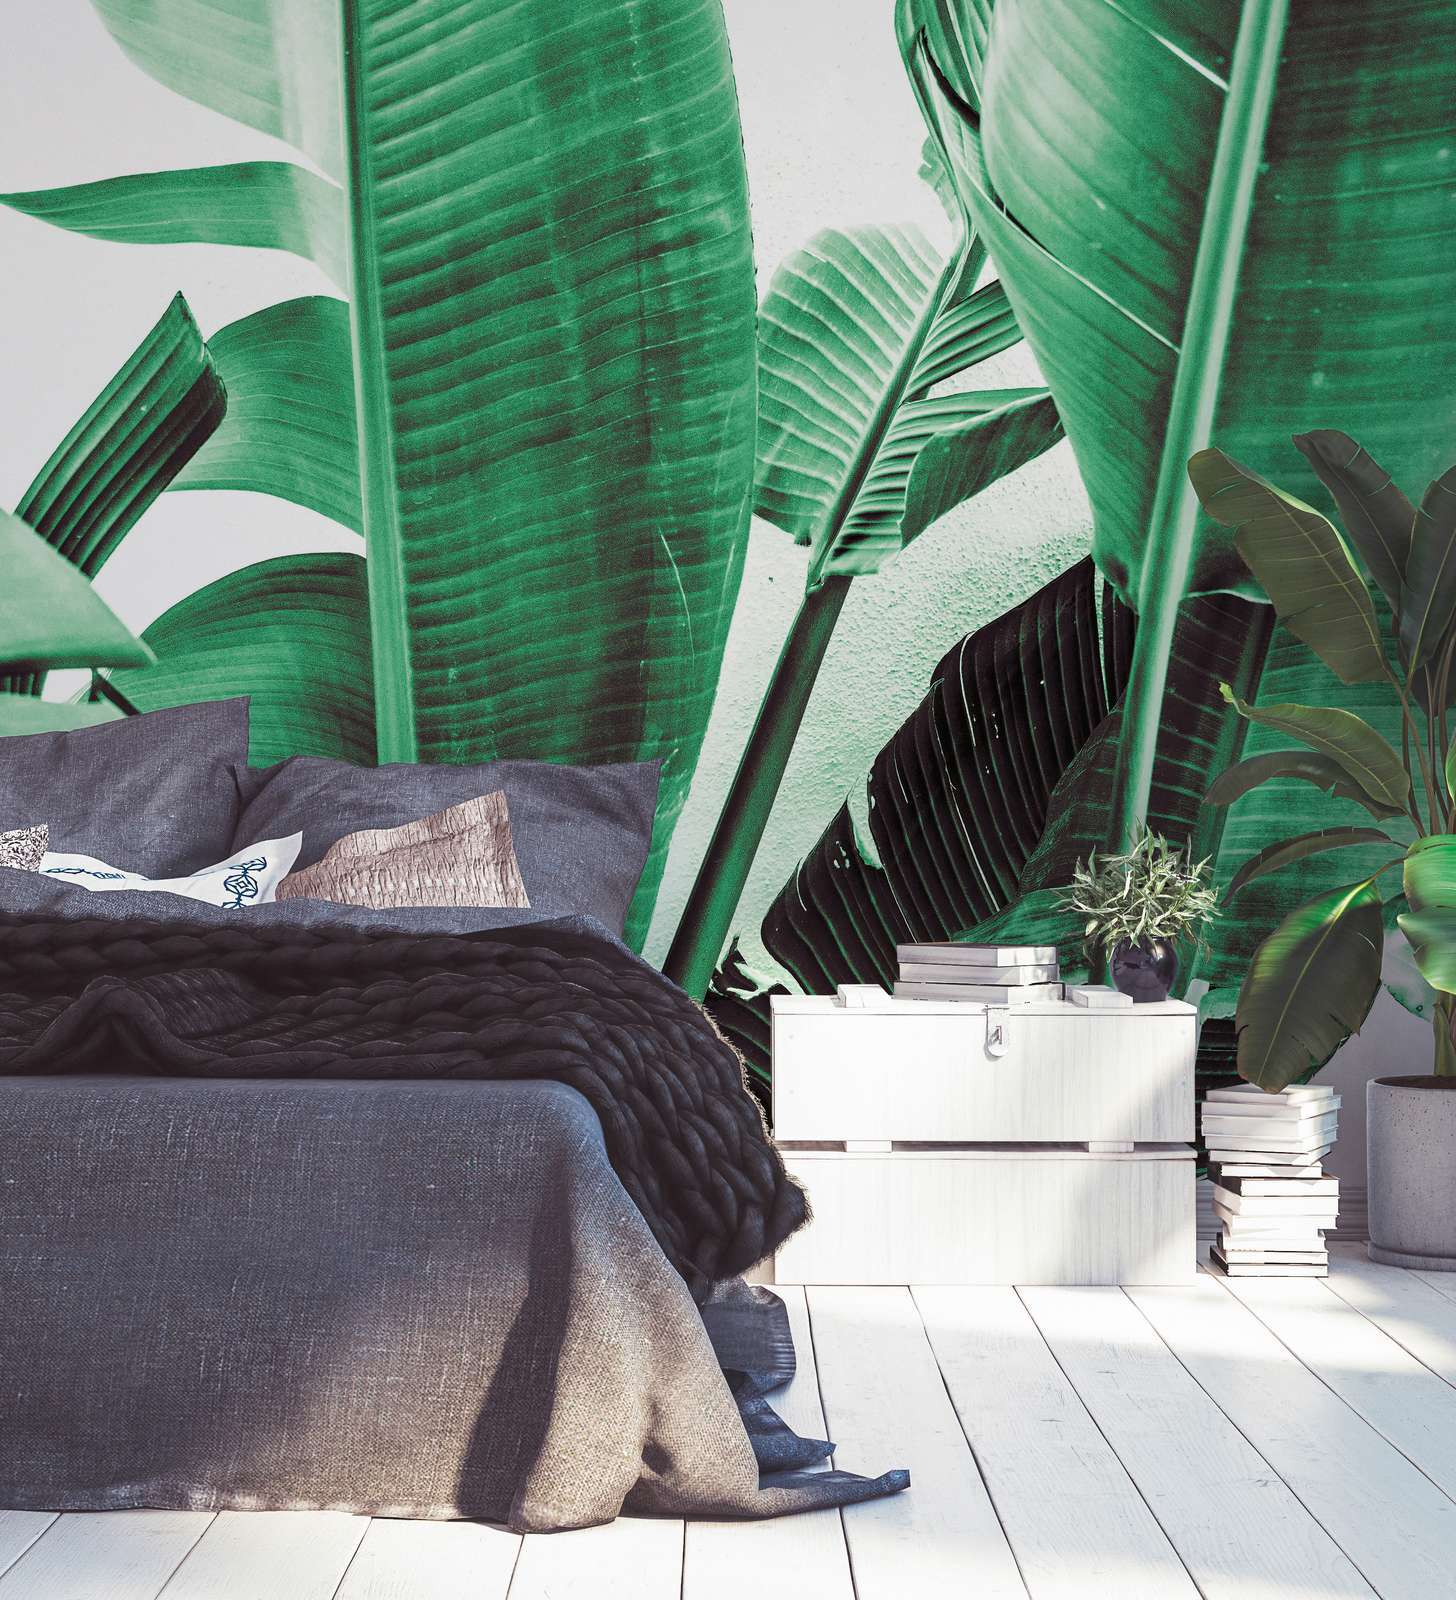             Papier peint panoramique Détail de feuilles de palmier - vert, blanc
        